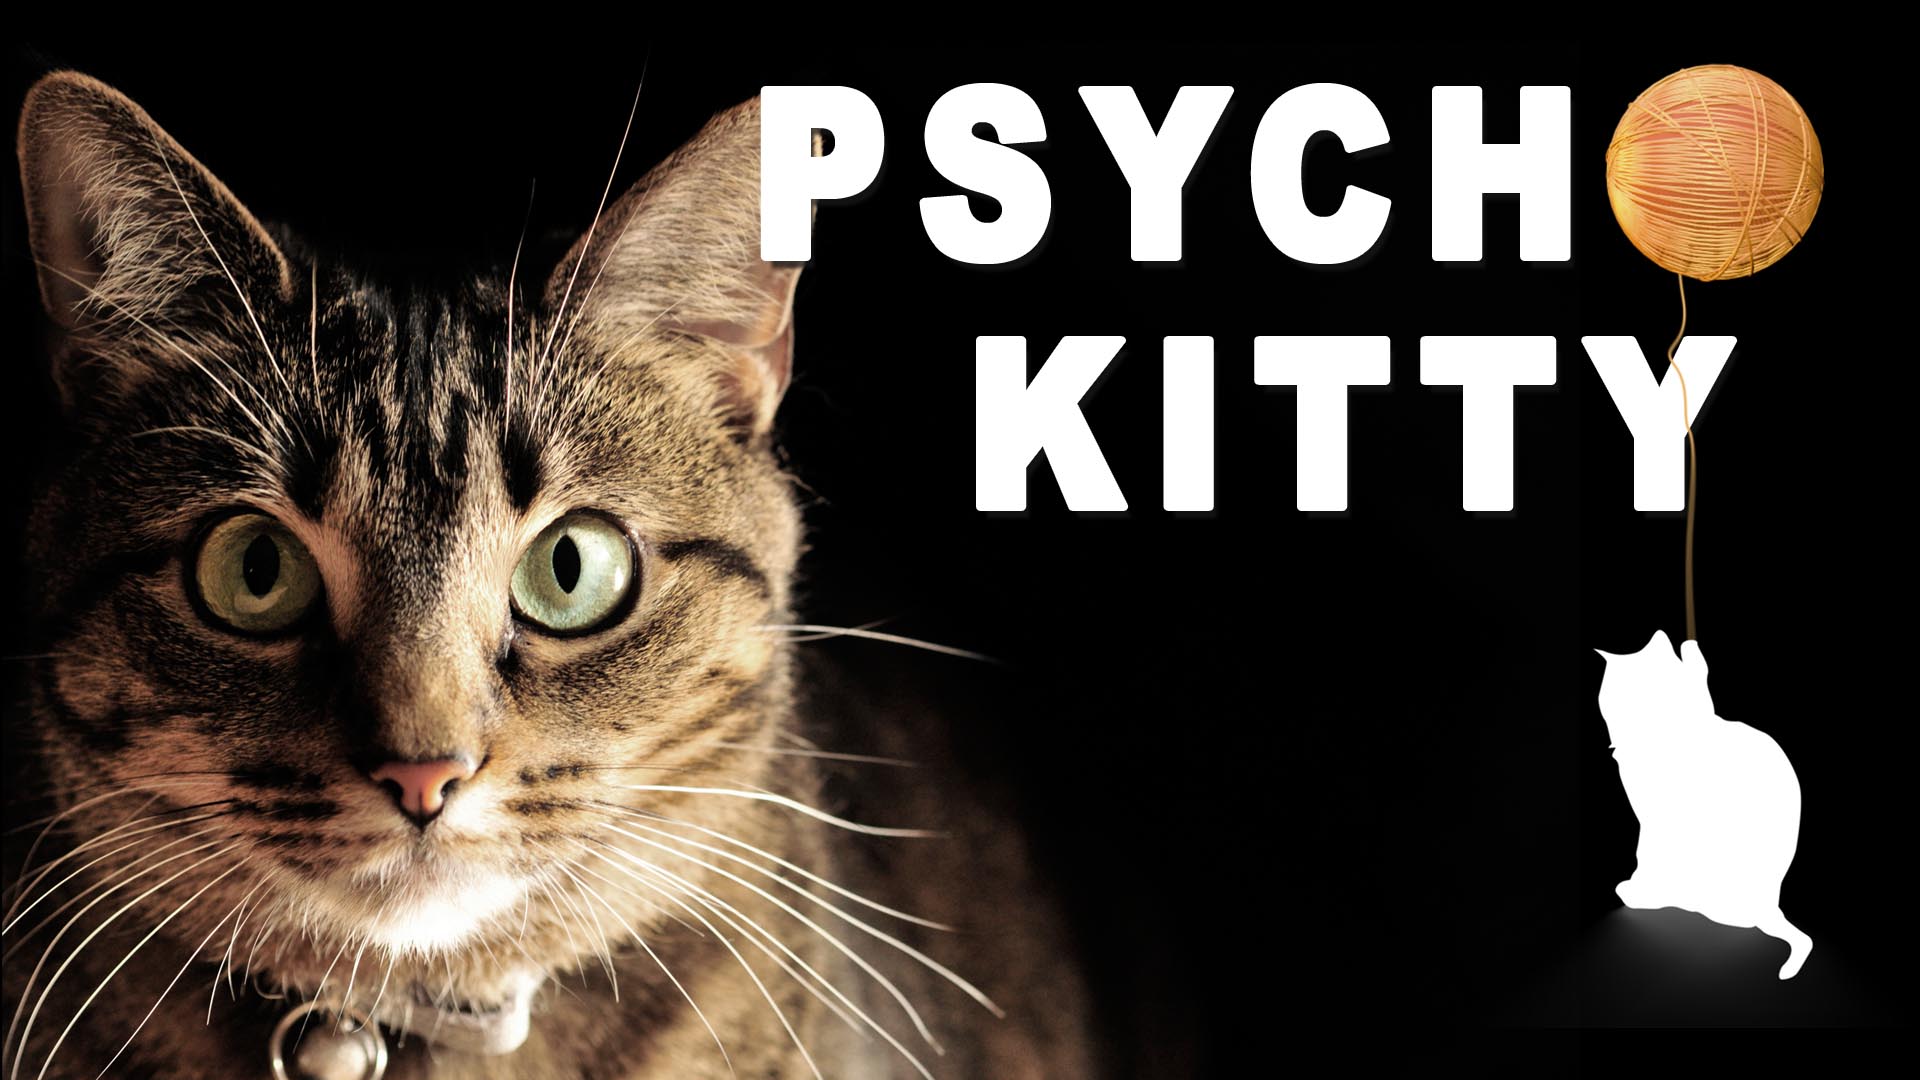 Psycho Cat - HD Wallpaper 